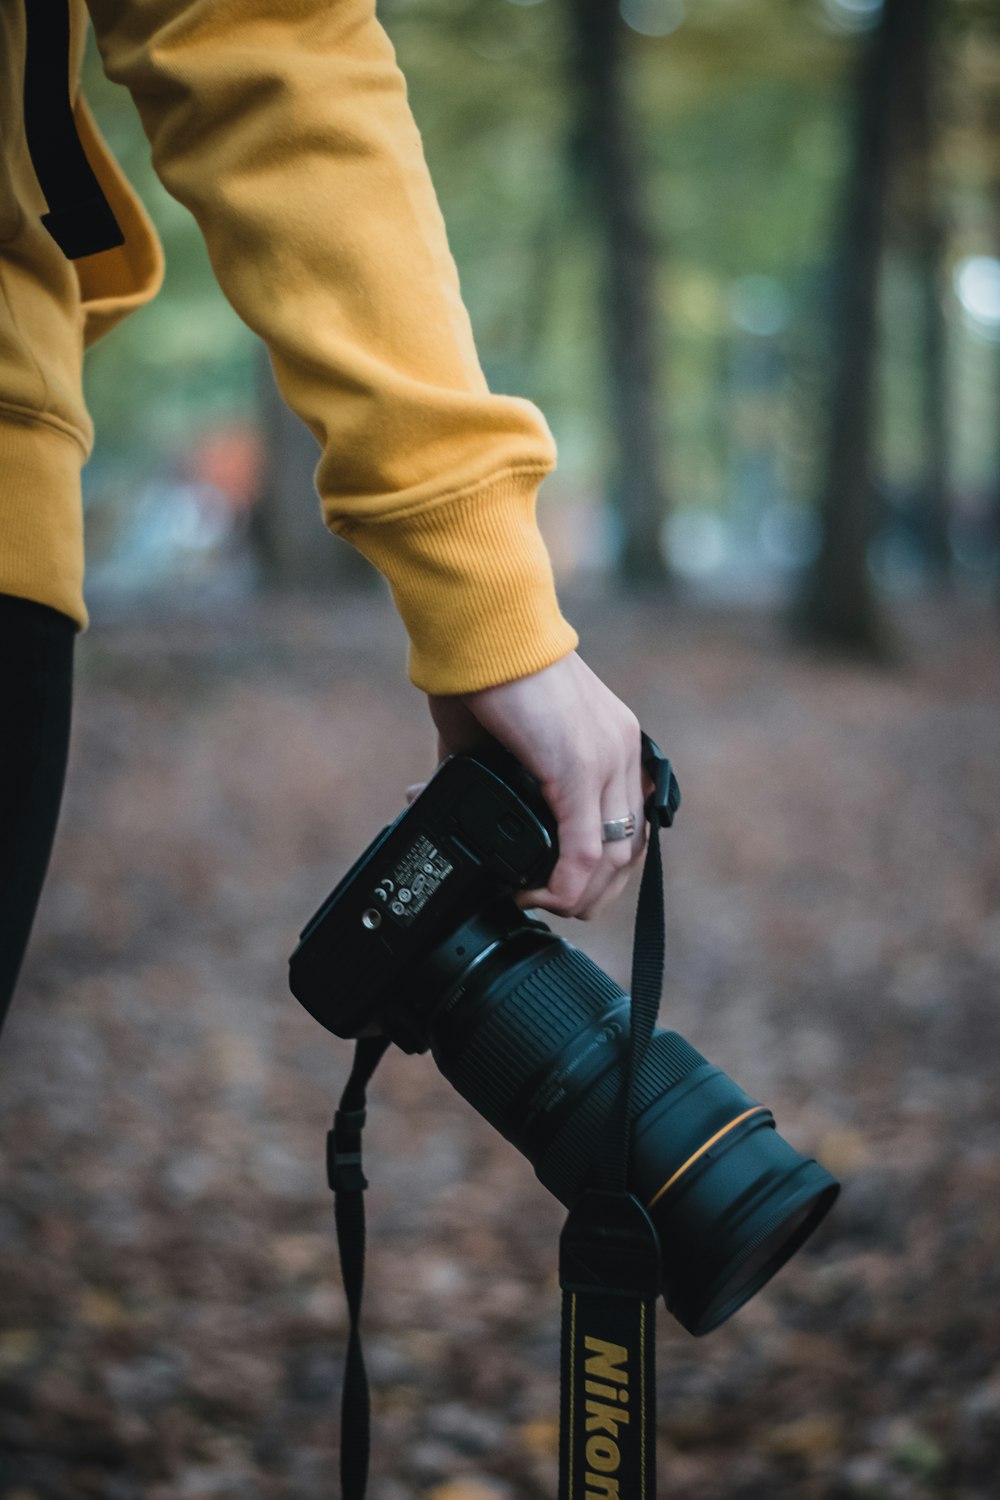 Persona sosteniendo una cámara DSLR Nikon negra